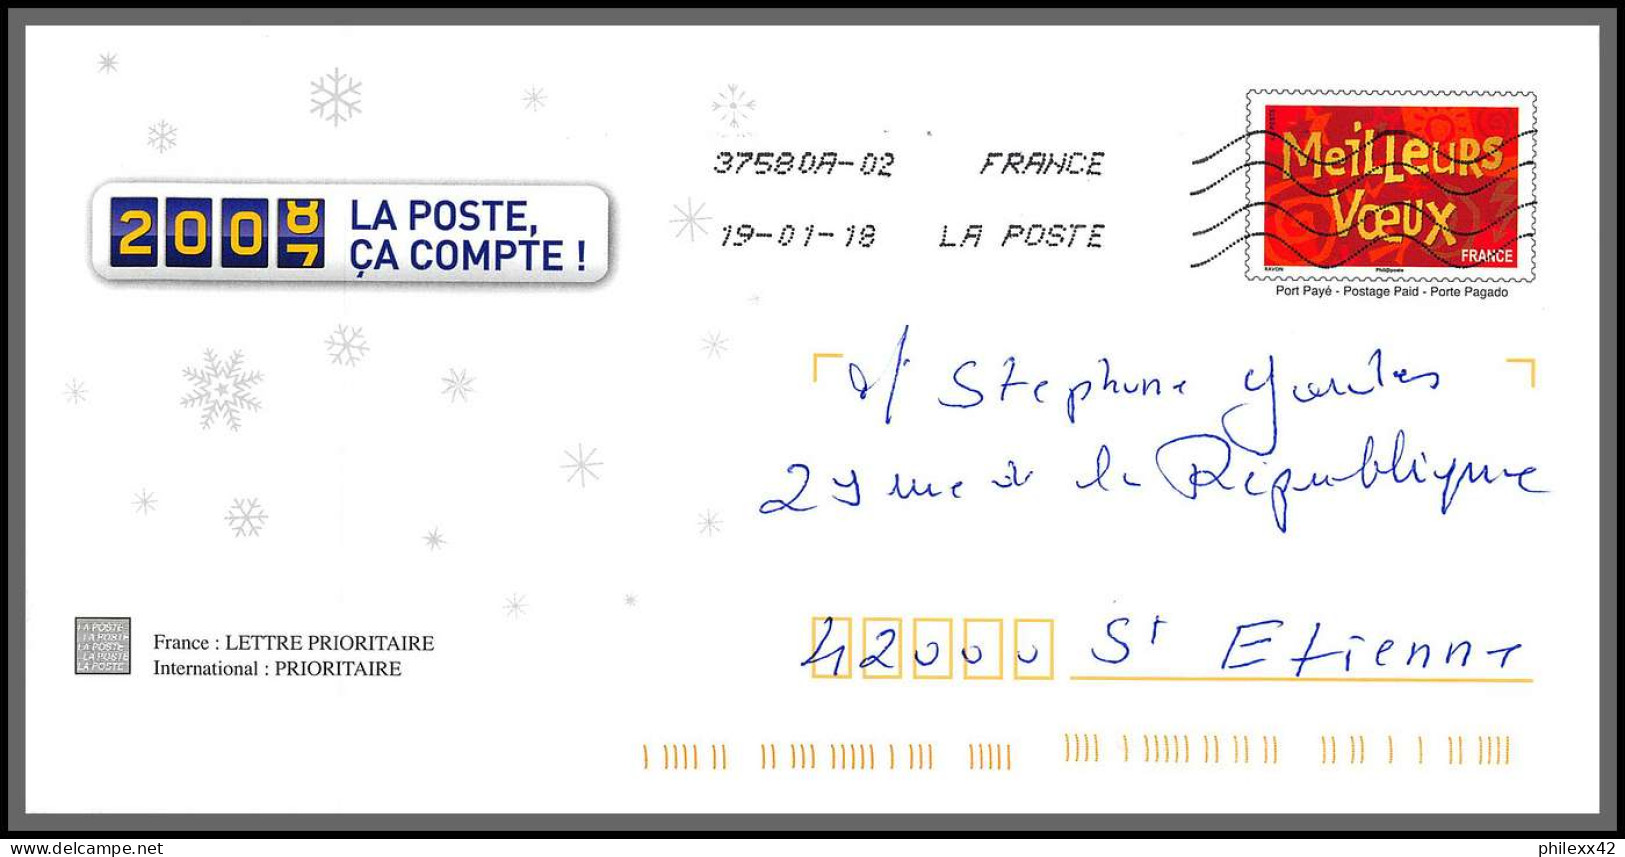 95893 - lot de 15 courriers lettres enveloppes de l'année 2018 divers affranchissements en EUROS